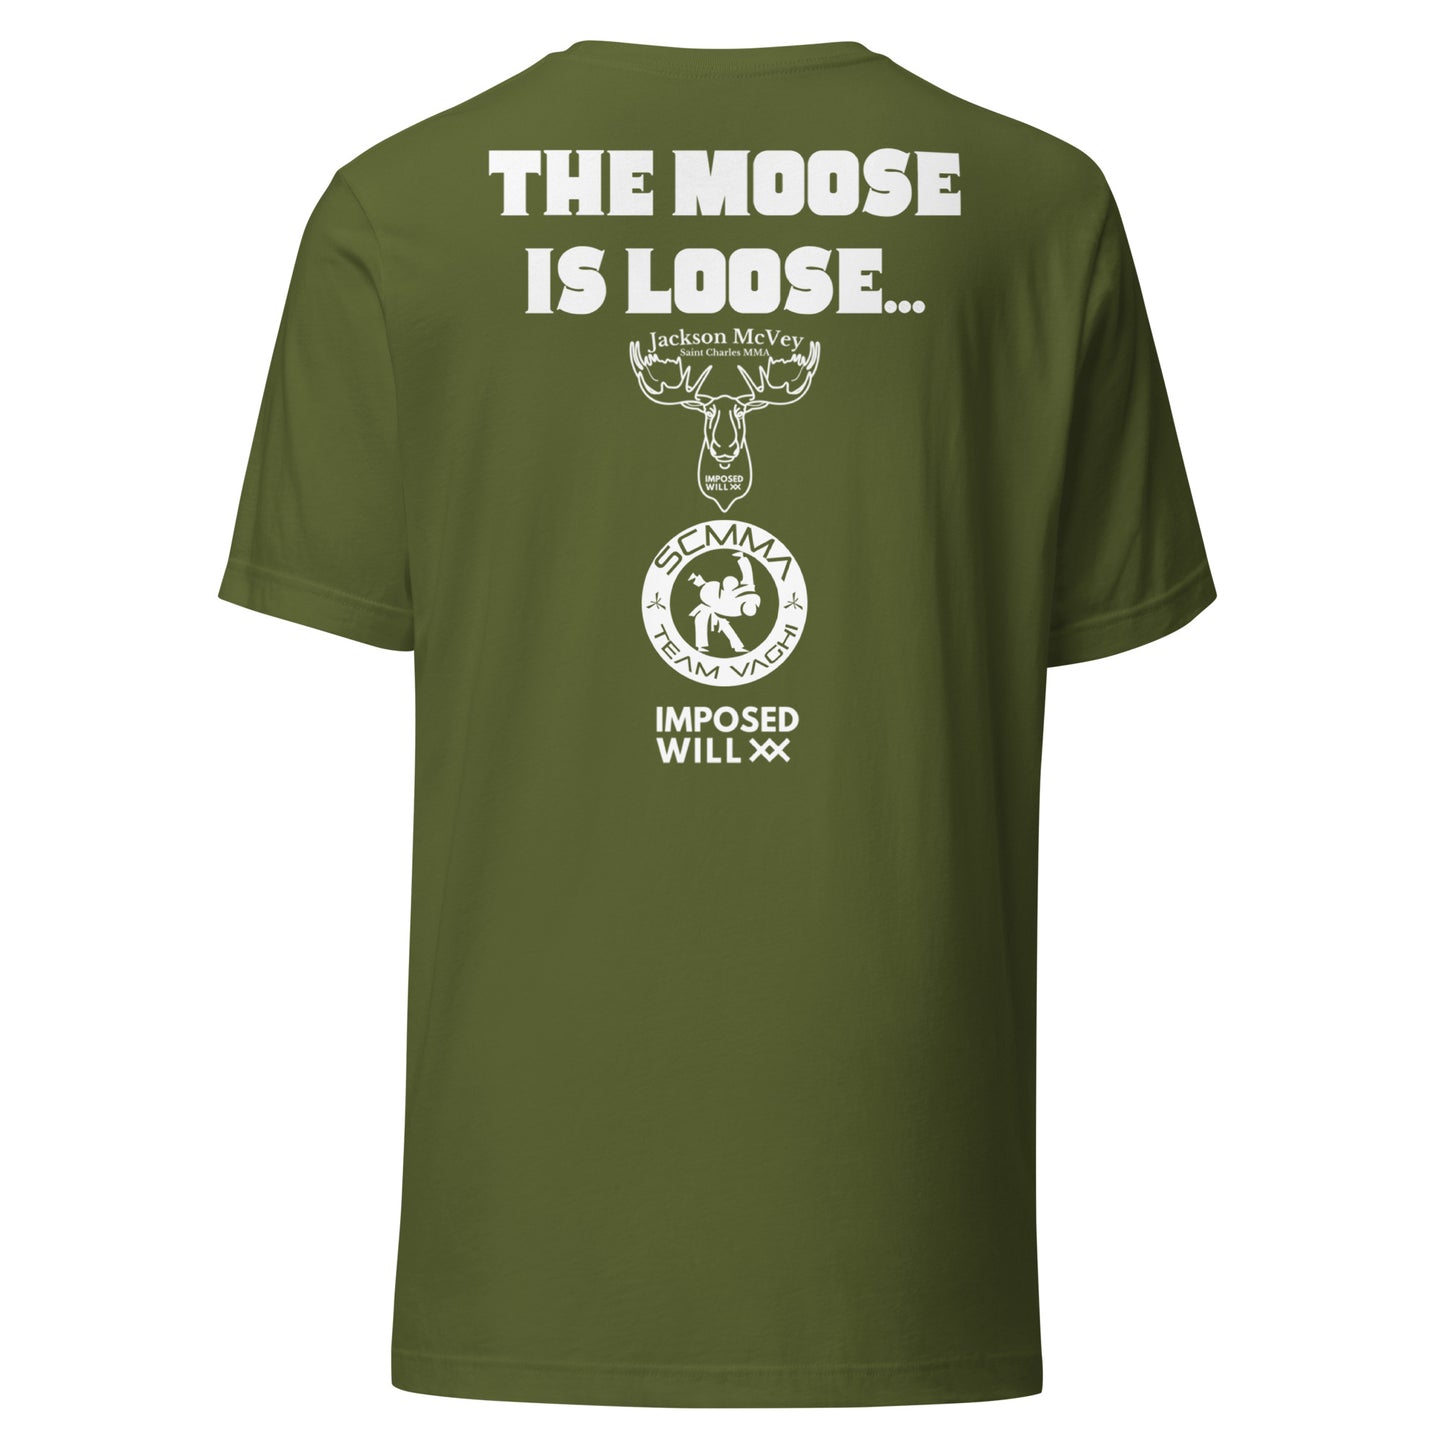 Moose Is Loose Tee - ADULT UNISEX